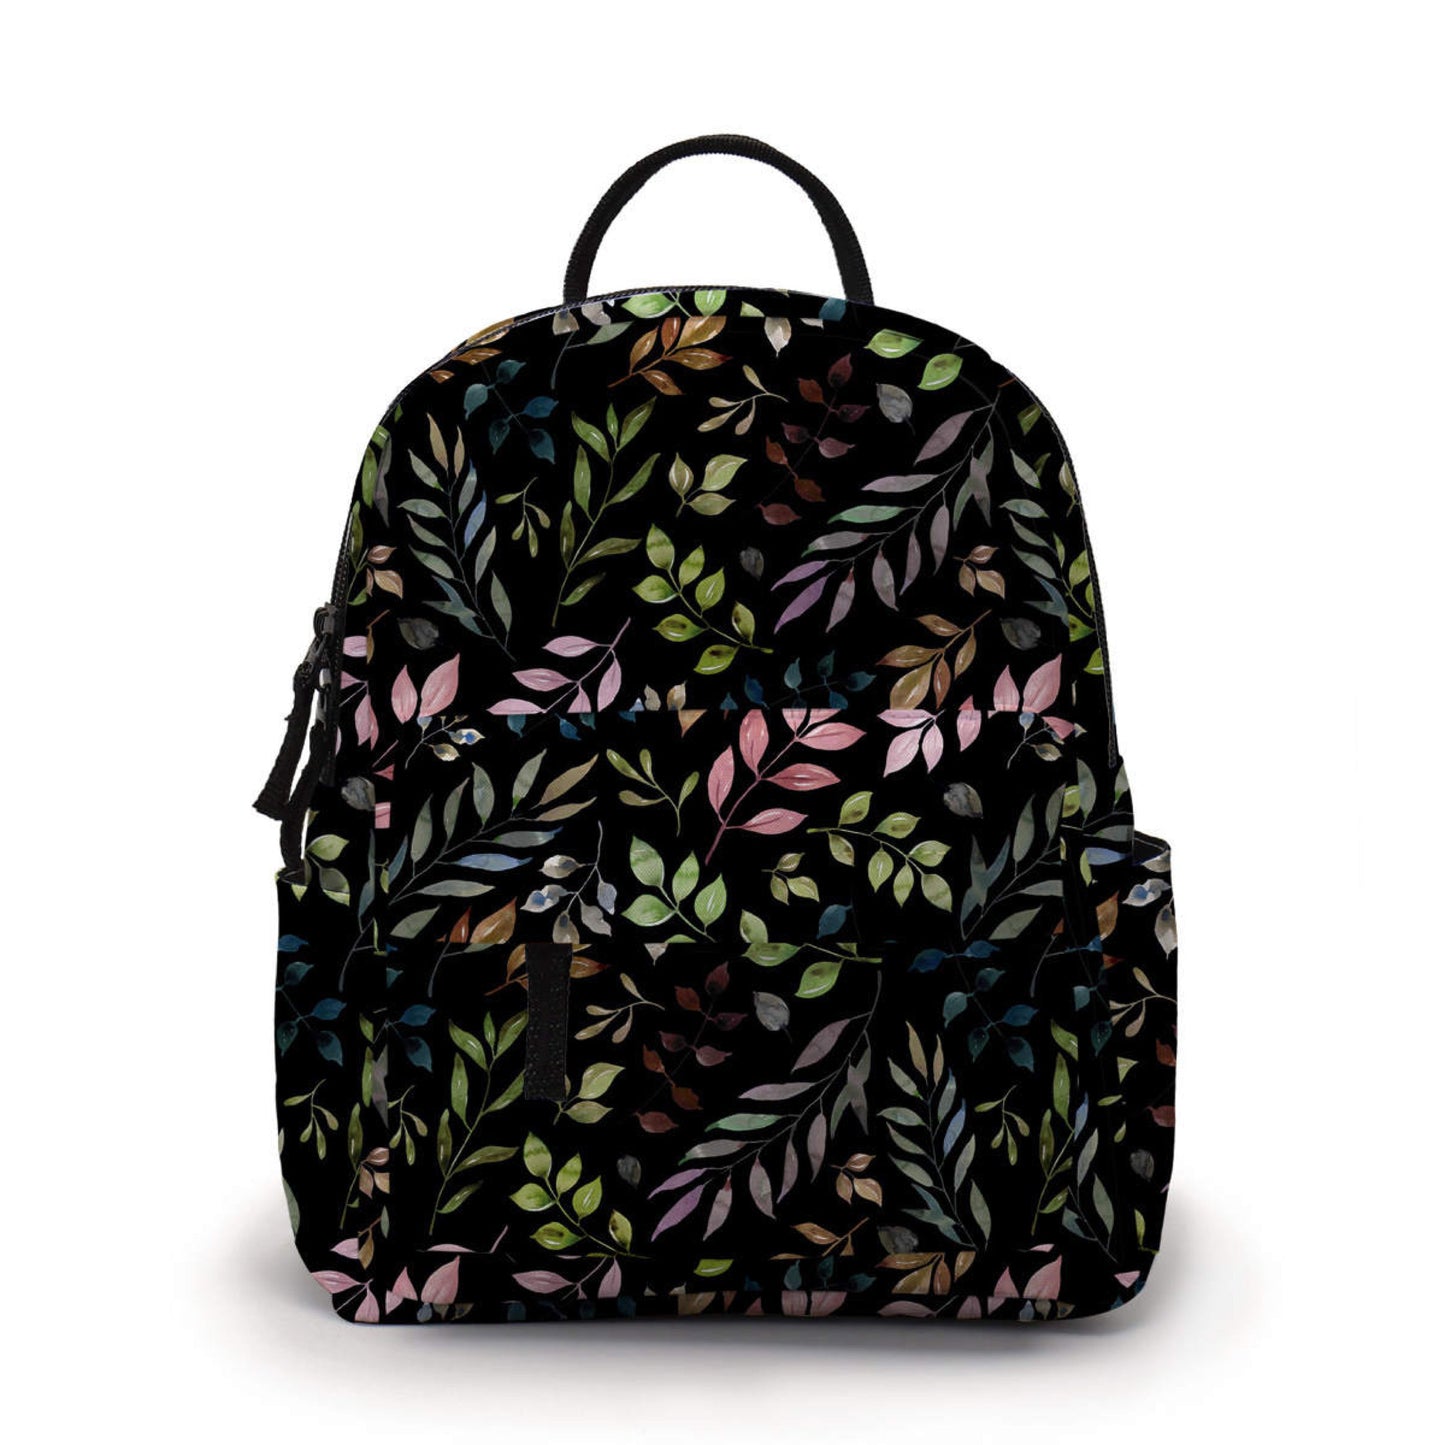 Mini Backpack - Floral Vines Black